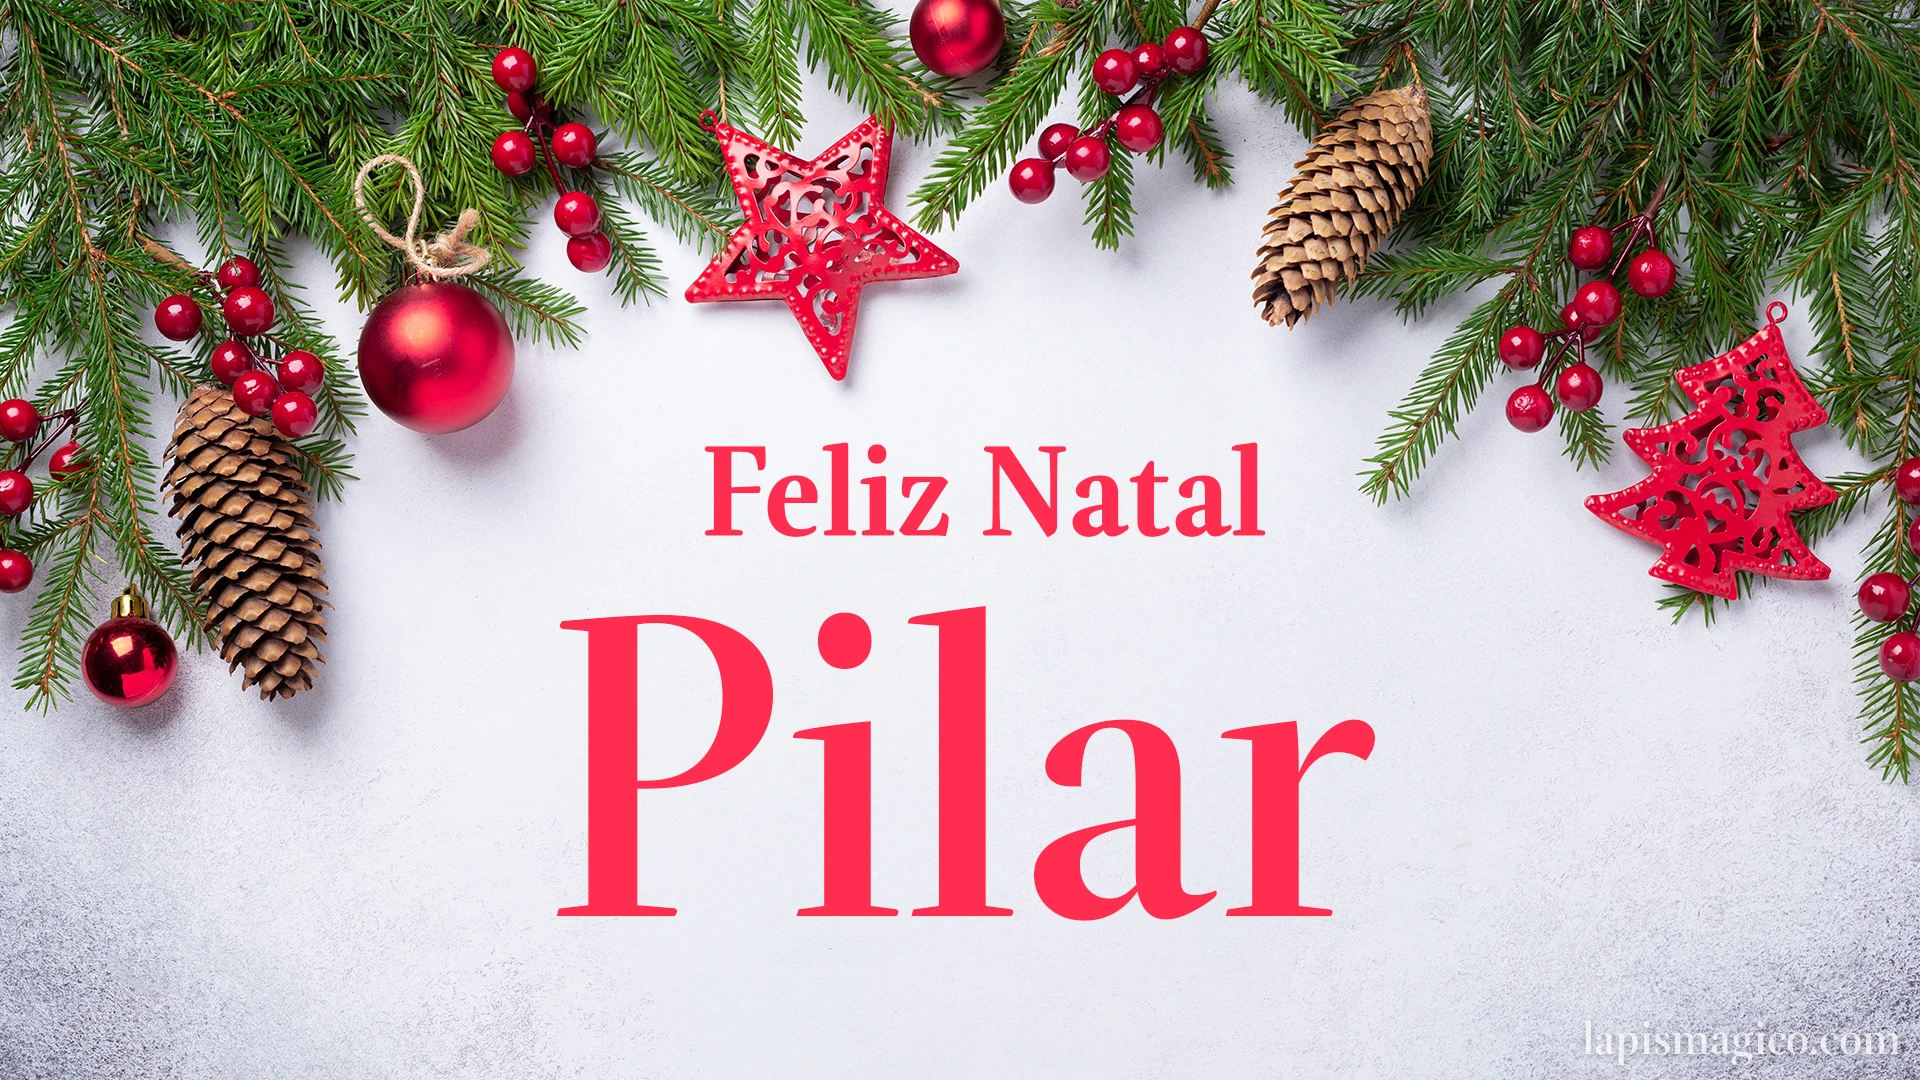 Oh Pilar, cinco postais de Feliz Natal Postal com o teu nome